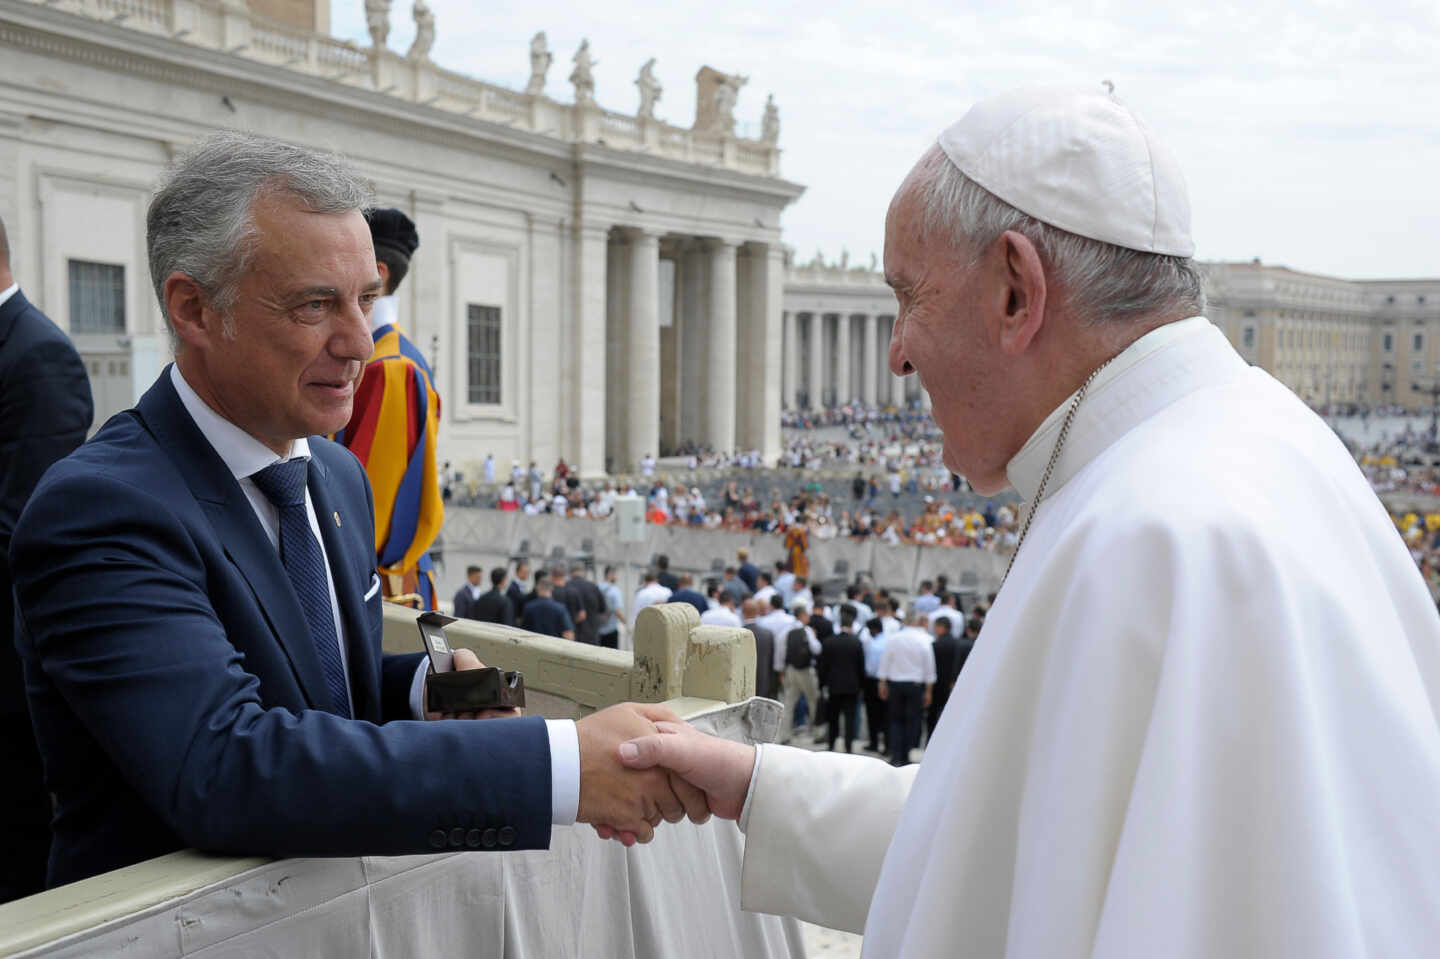 El Papa Francisco saluda al lehendakari Iñigo Urkullu durante su visita el 28 de agosto de 2019 al Vaticano.